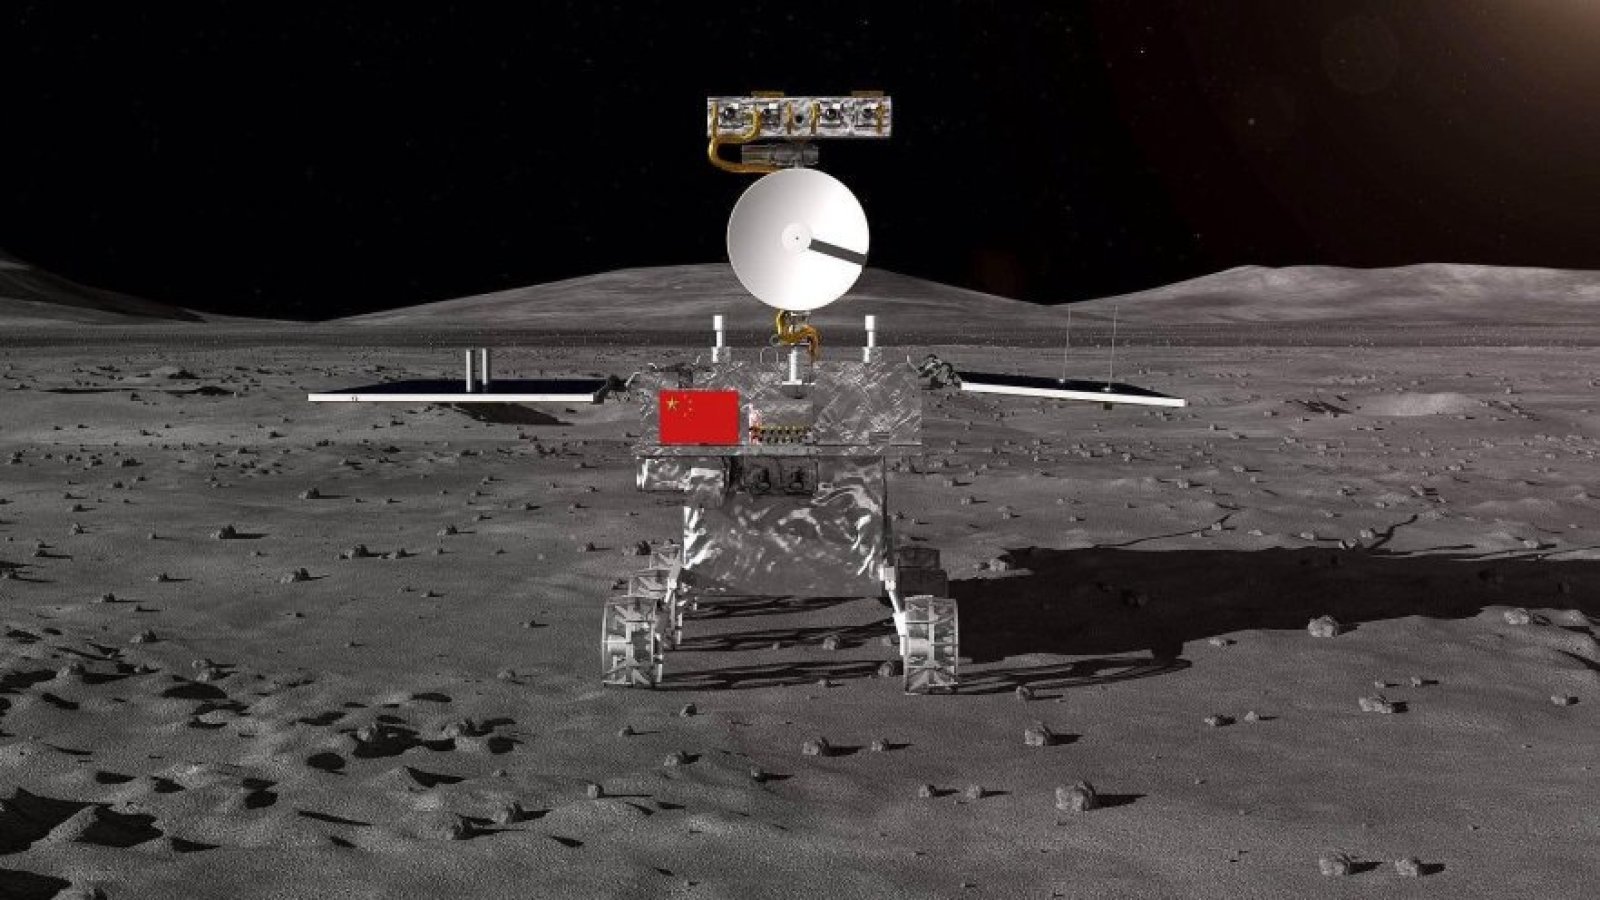 ยานสำรวจจากจีนพบวัตถุประหลาดบนพื้นผิวด้านมืดของดวงจันทร์!